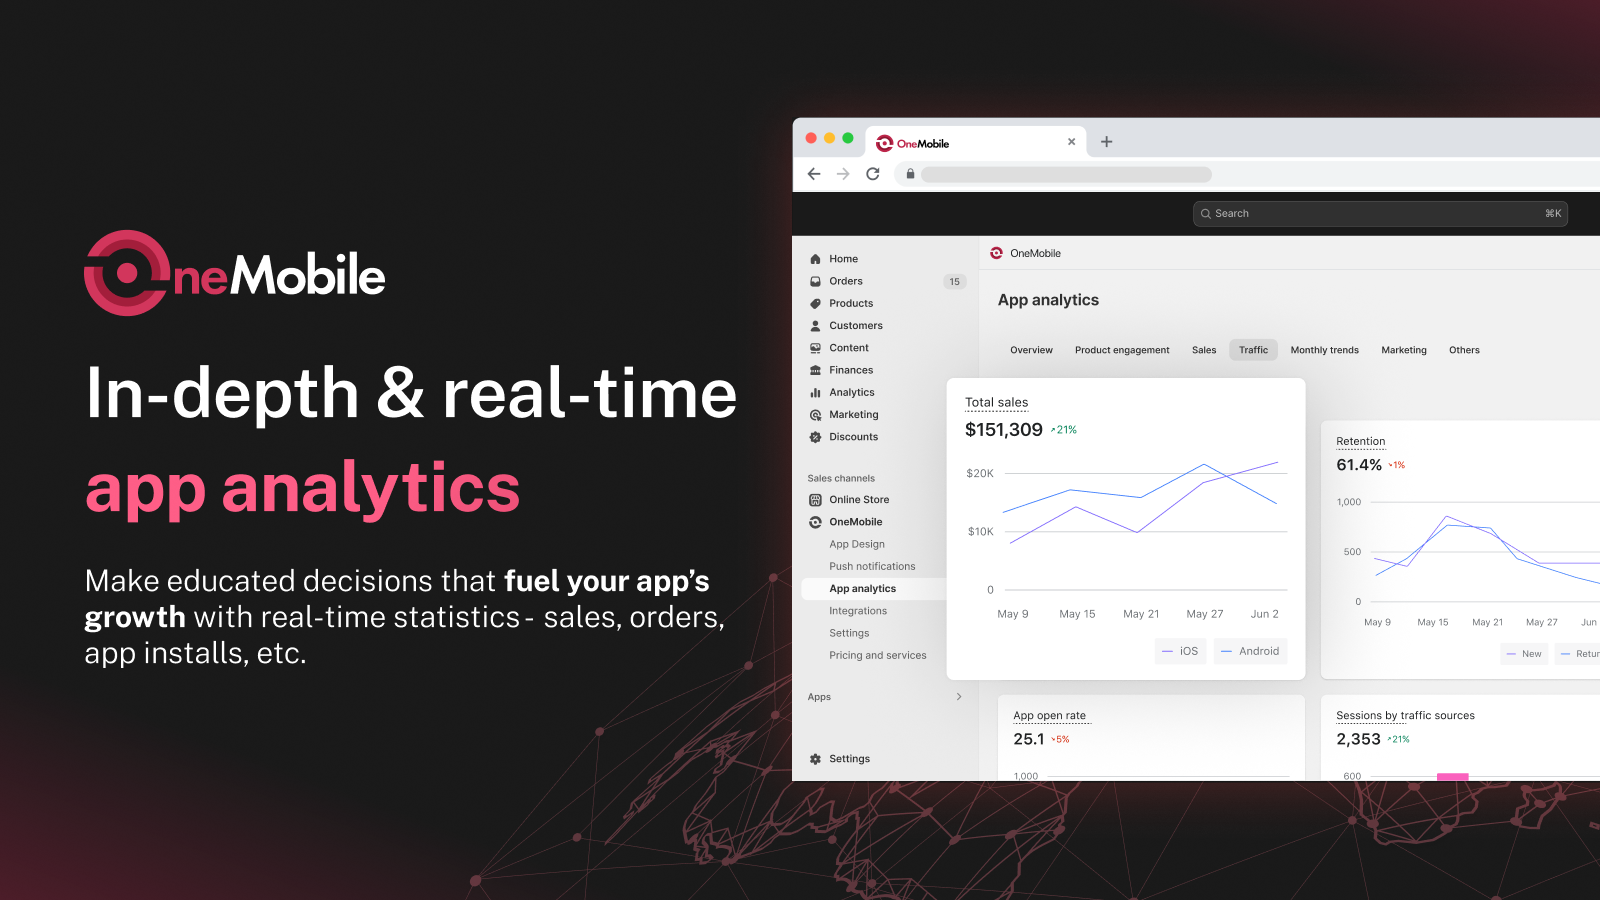 Alimente o crescimento do seu aplicativo com estatísticas em tempo real